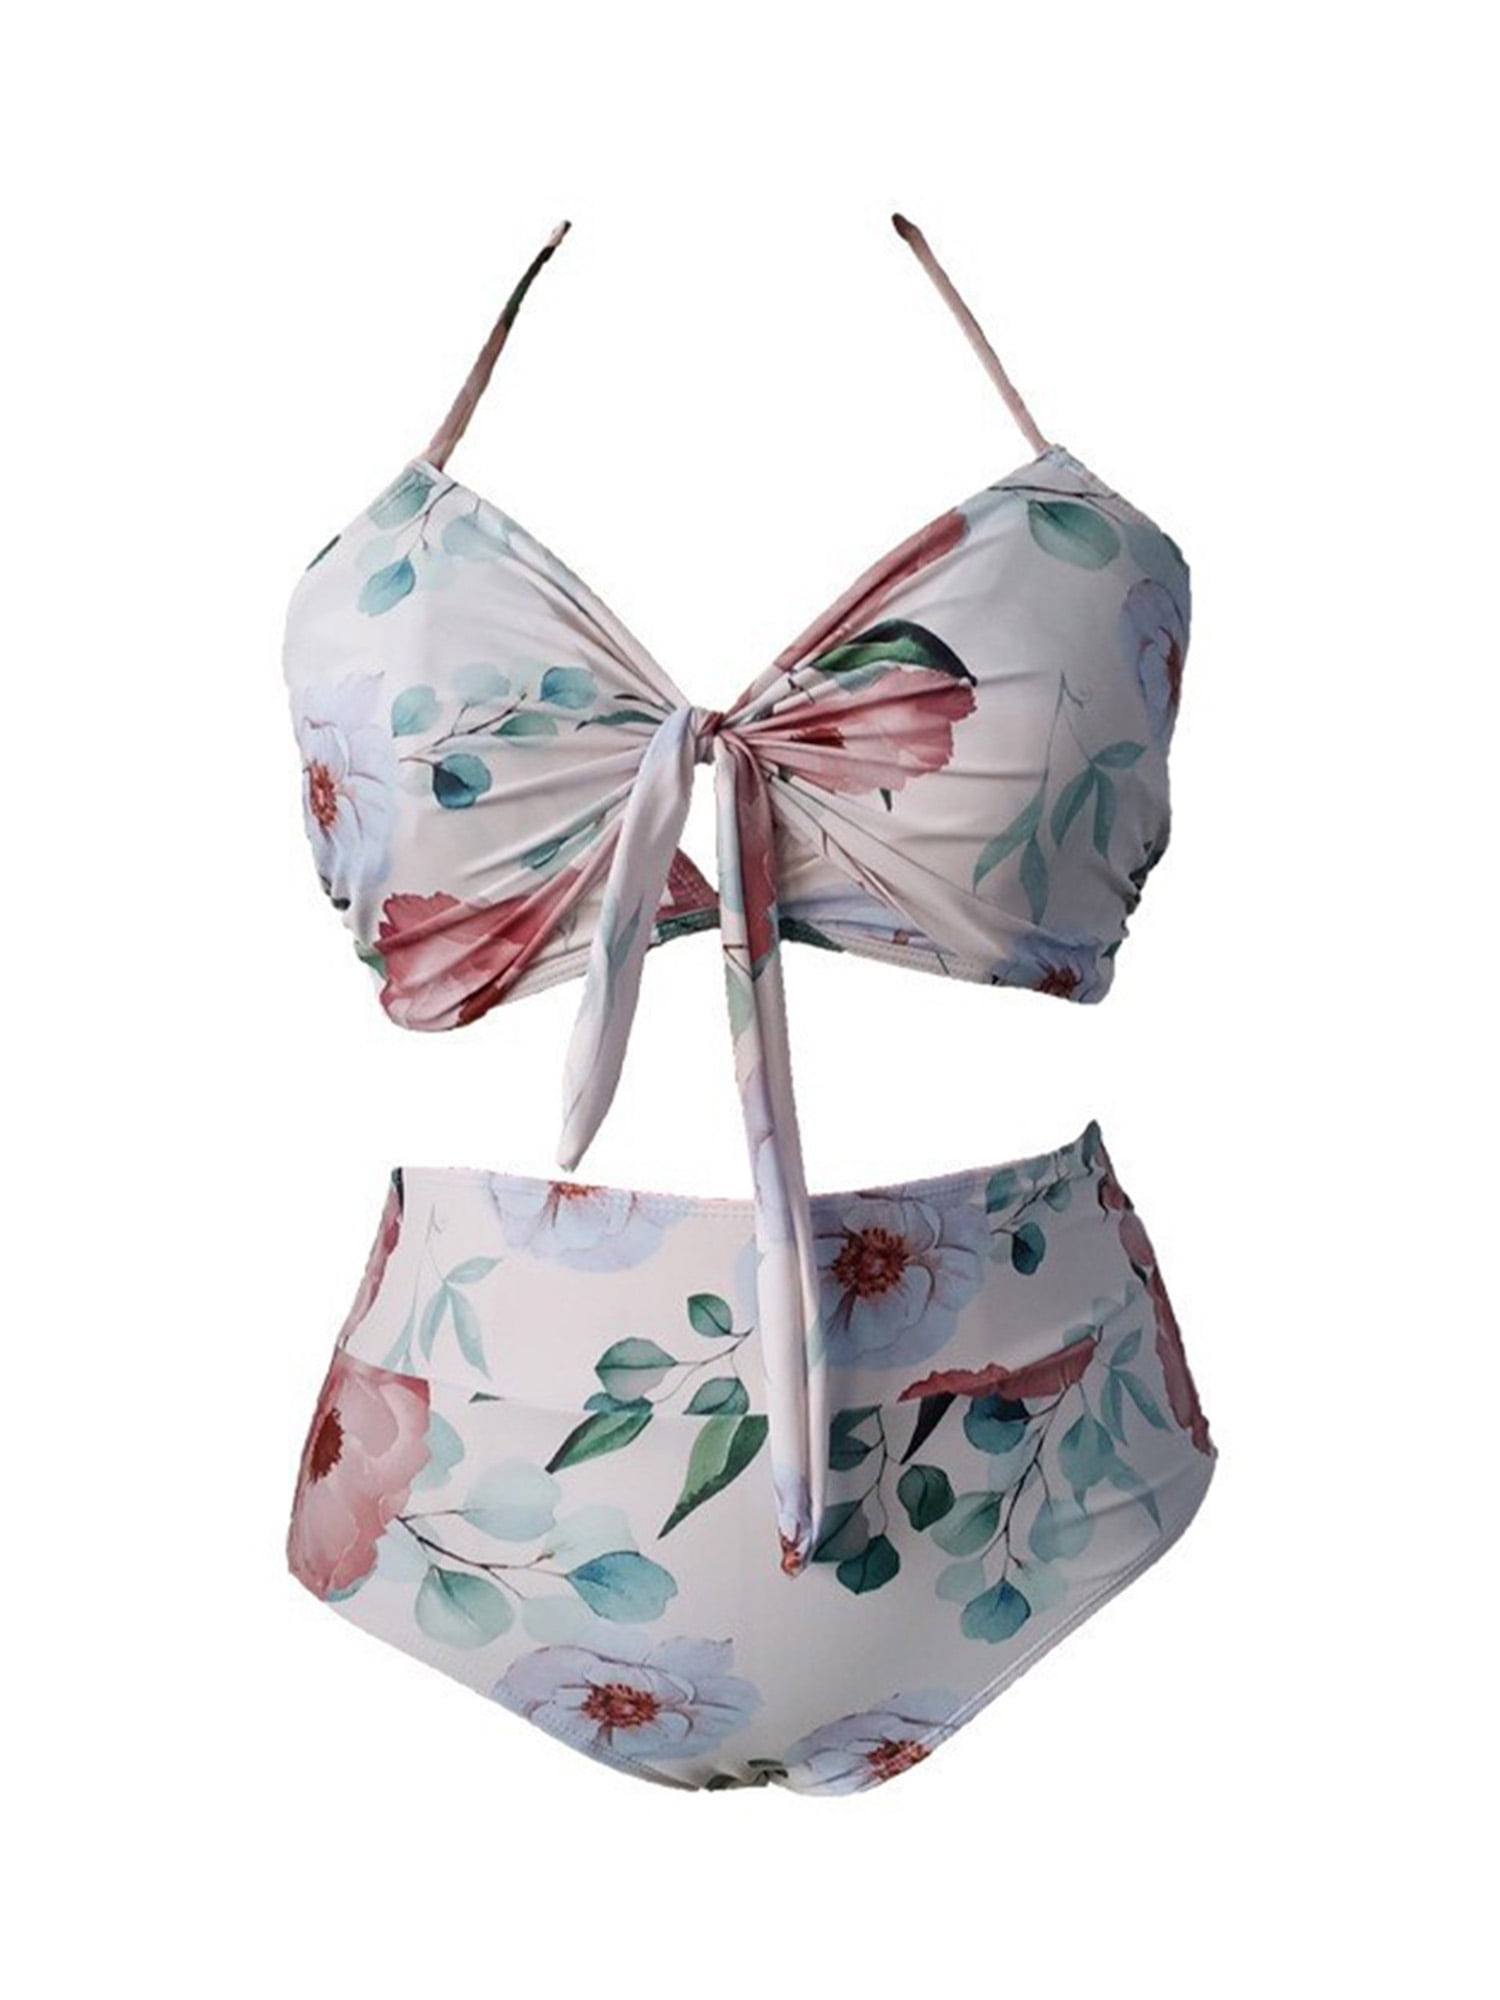 Buy MXGZ Bathing Suit, Breathable Stylish Floral Printed 3pcs Set